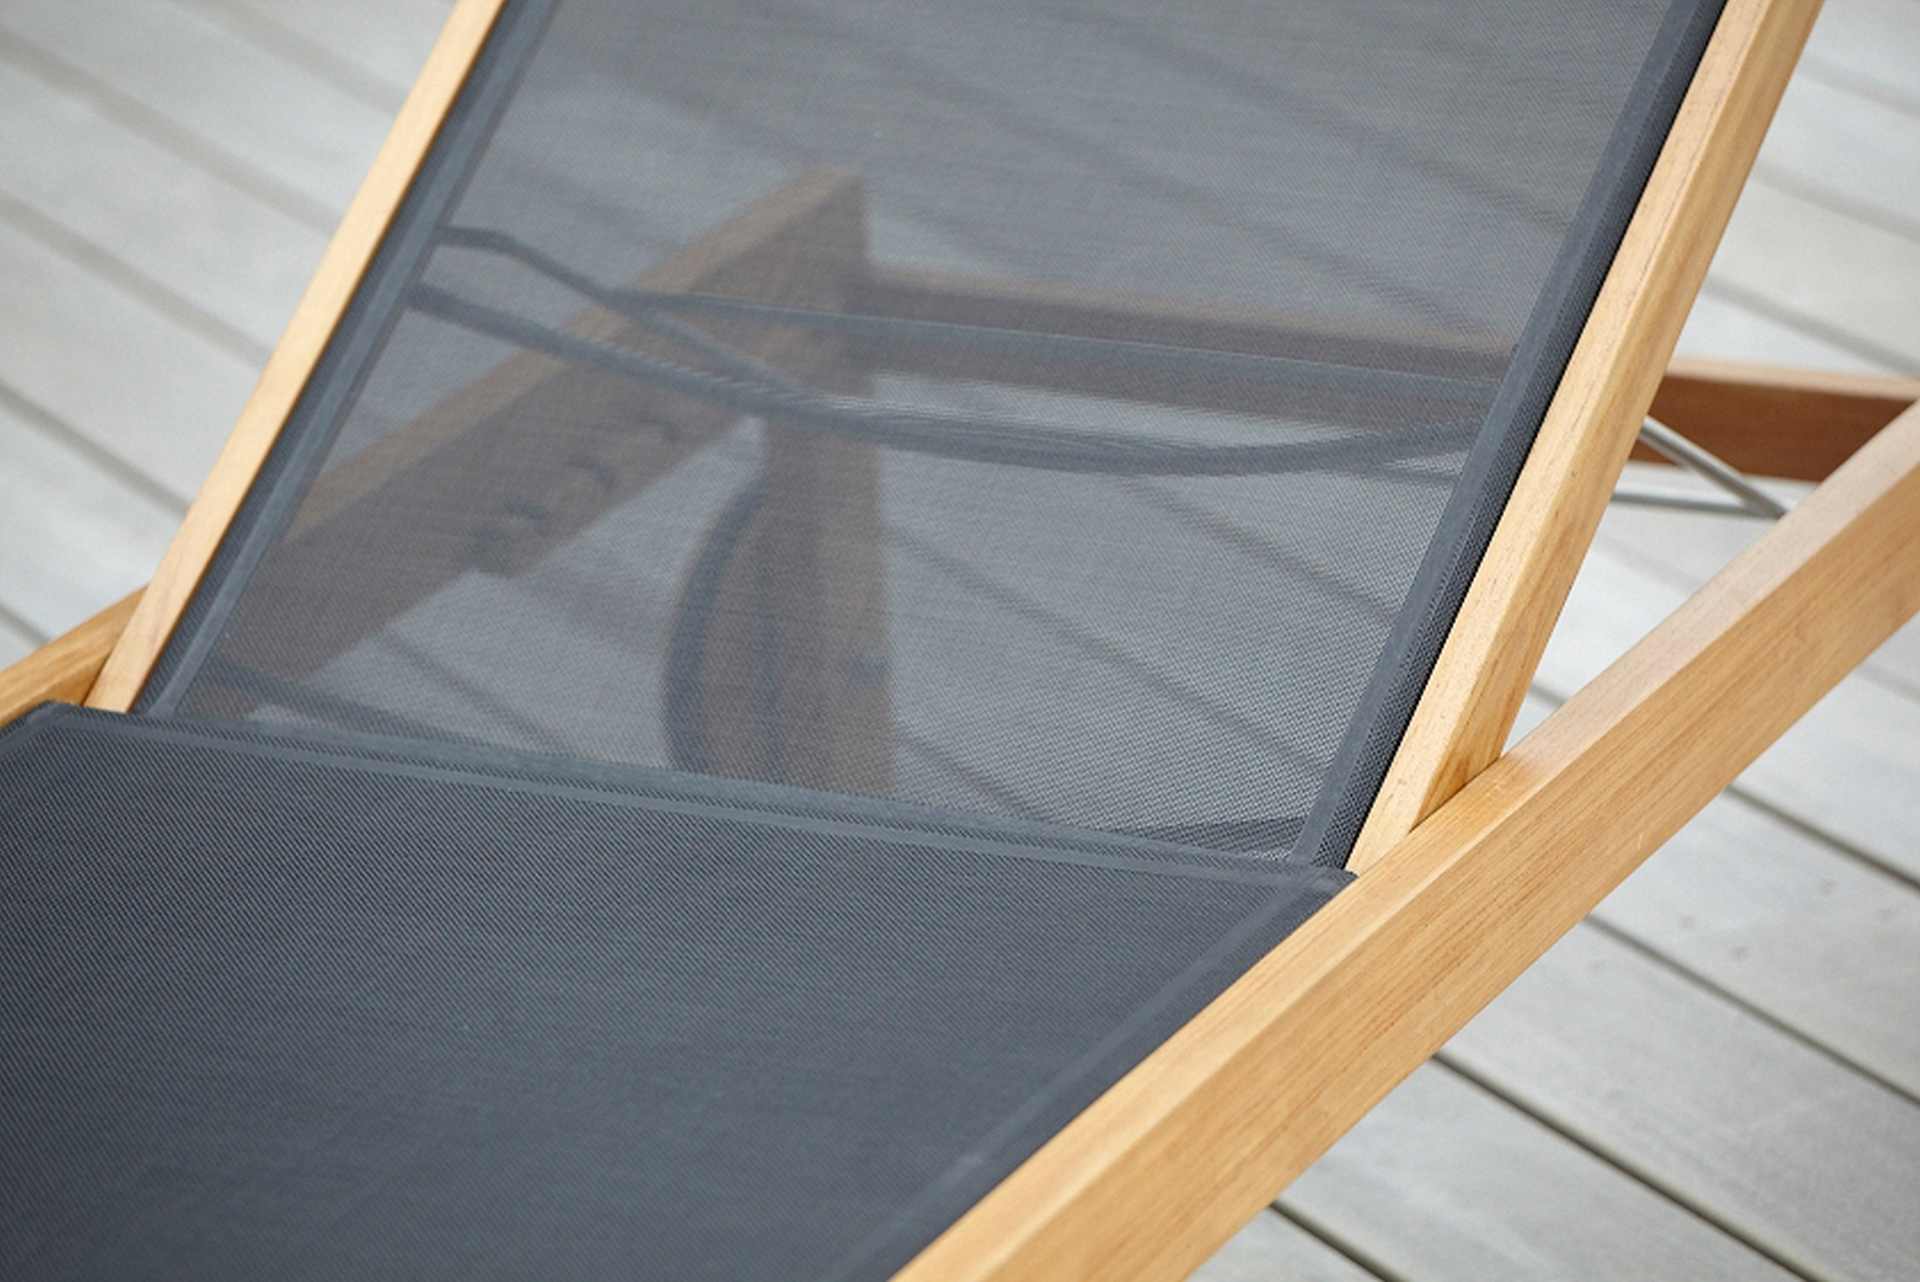 Die Sonnenliege Sonoma wurde aus Teakholz gefertigt. Sie besitzt Rollen für den einfachen Transport. Designet wurde sie von der Marke Jan Kurtz. Die Farbe der Liege ist Schwarz.